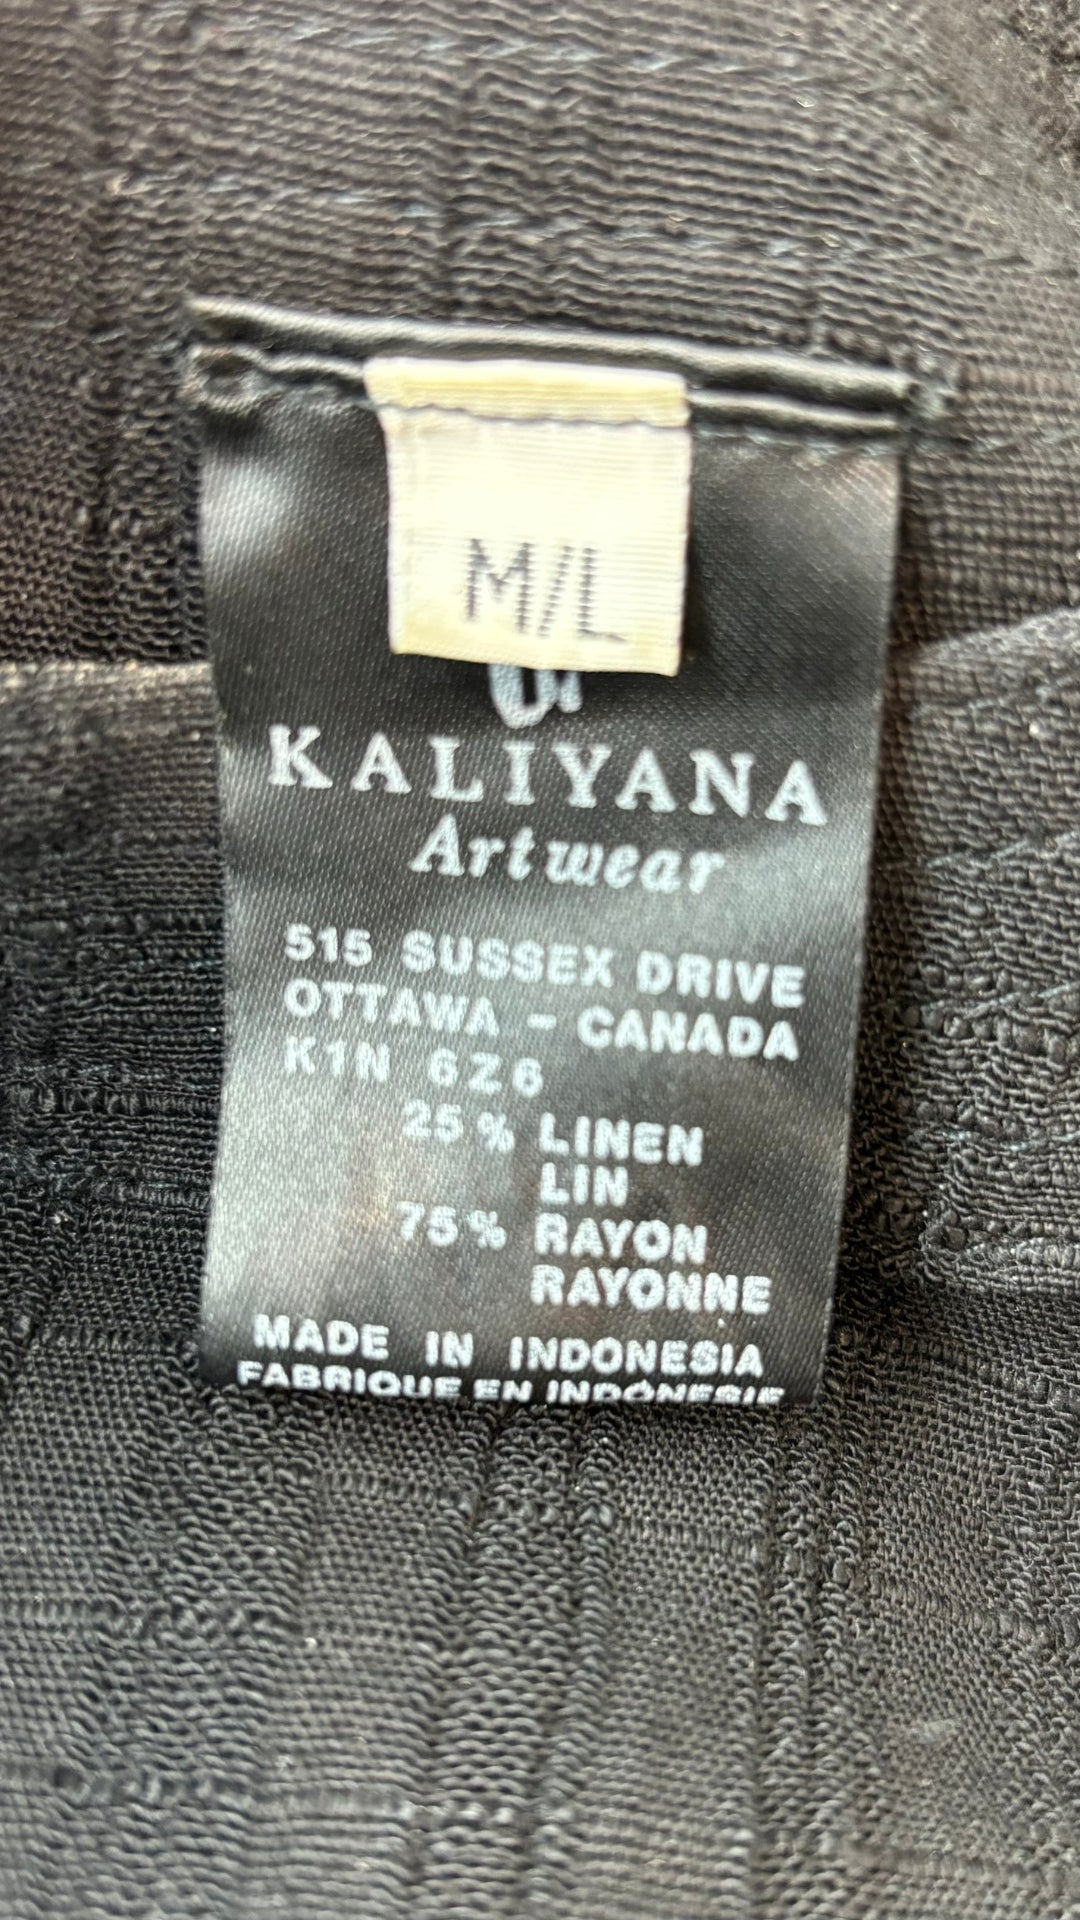 Robe longue noire texturée en mélange de lin Kaliyana, taille m/l. Vue de l'étiquette de marque, taille et composition.